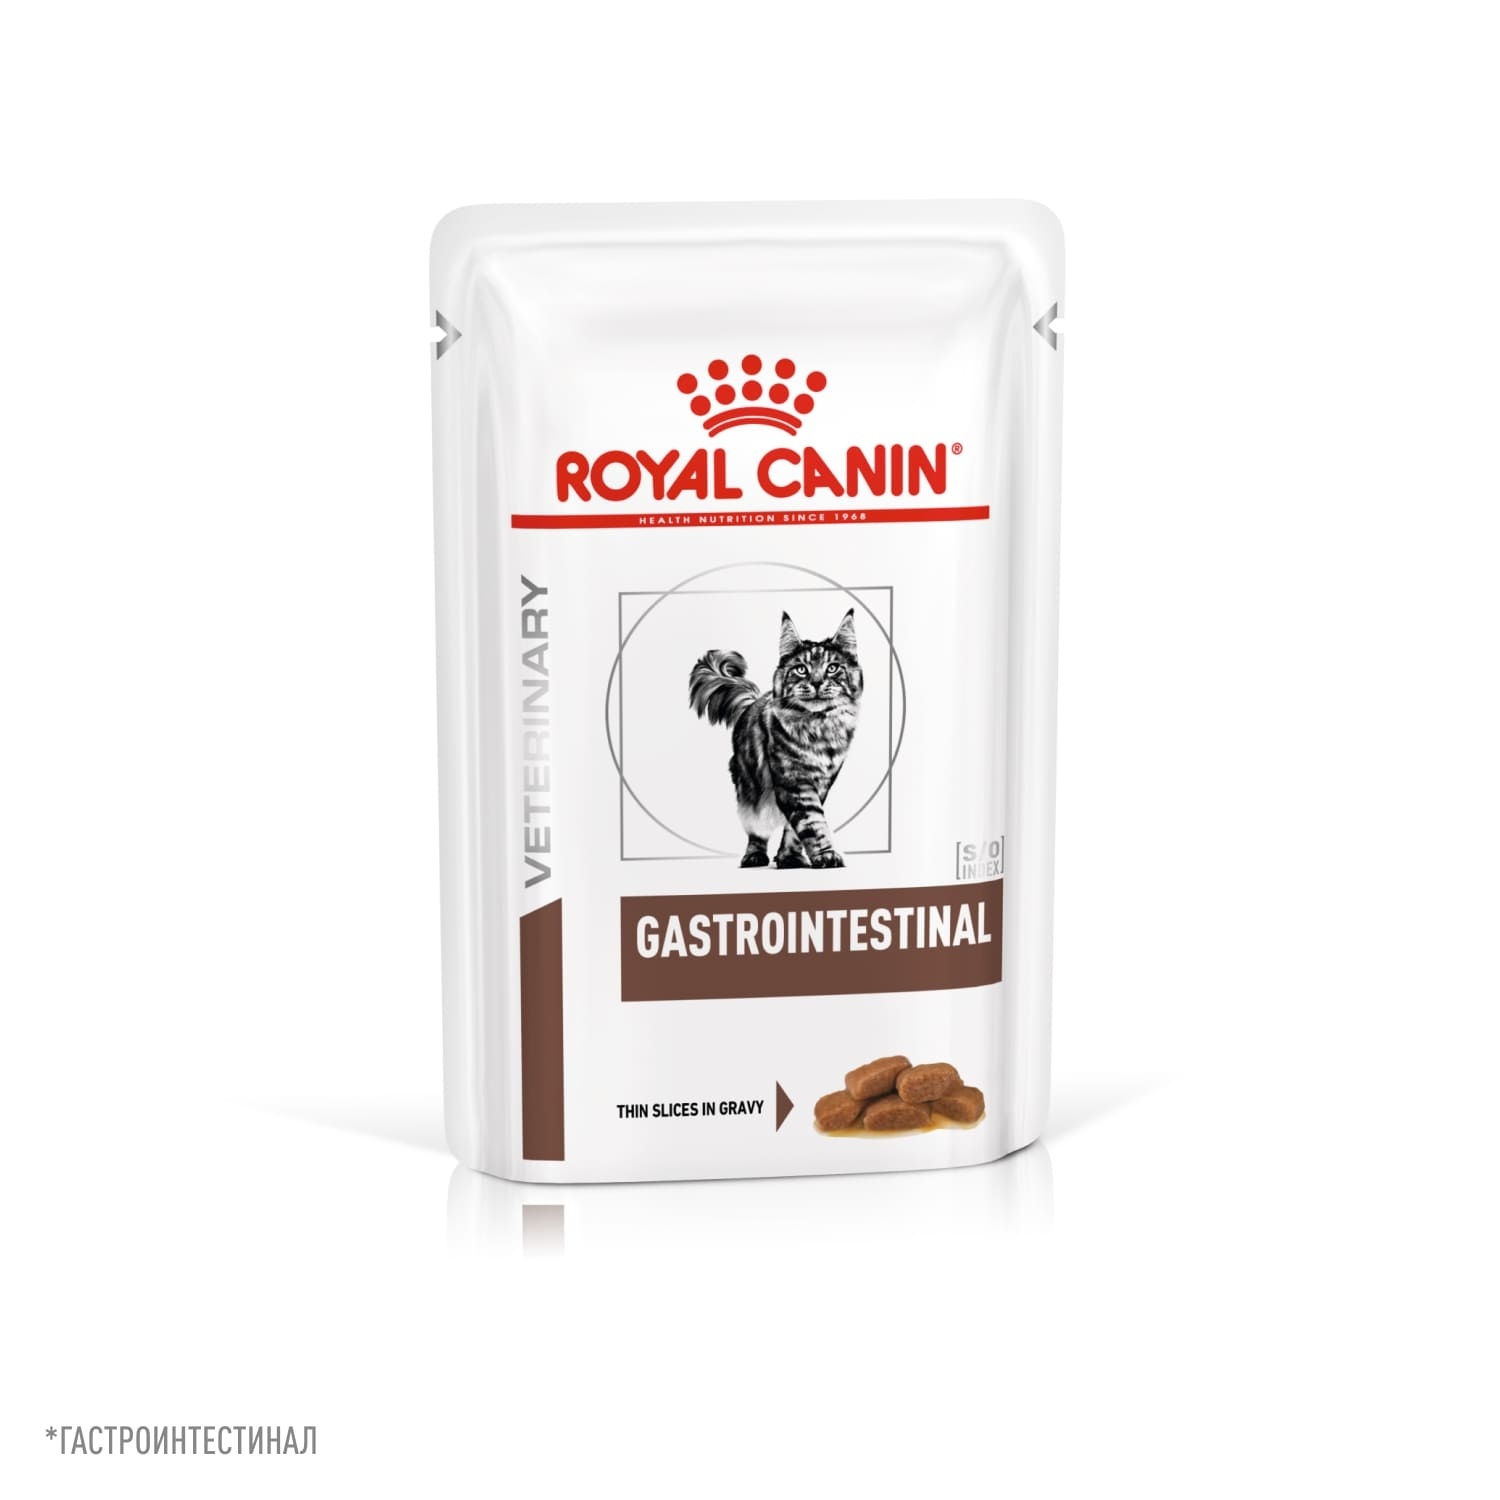 Royal Canin (вет. паучи) Royal Canin (вет. паучи) консервированный полнорационный корм диетический для кошек, рекомендуемый при острых расстройствах пищеварения (85 г)